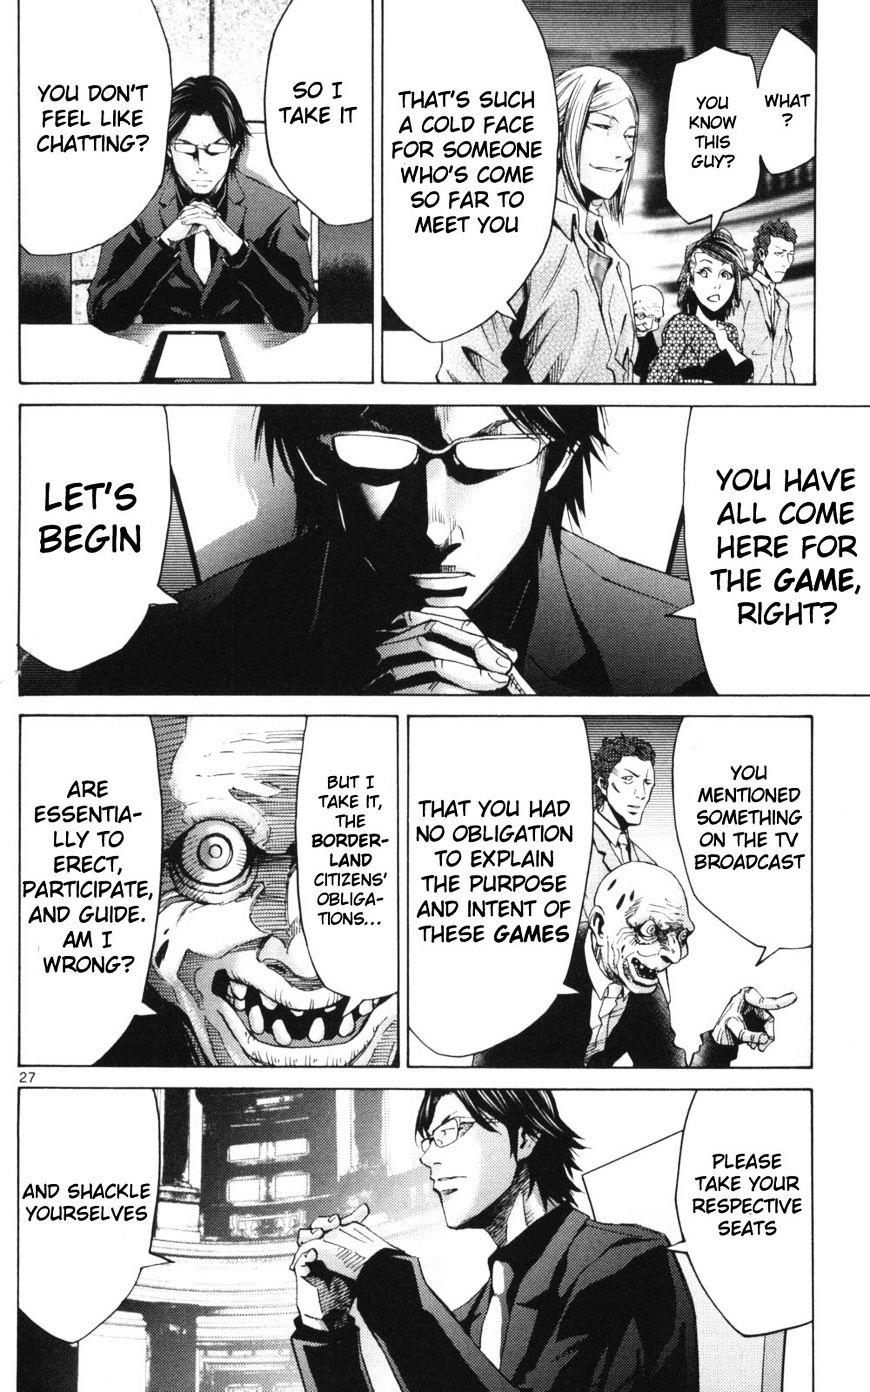 Imawa No Kuni No Alice Chapter 51.1 : Side Story 6 - King Of Diamonds (1) page 27 - Mangakakalot